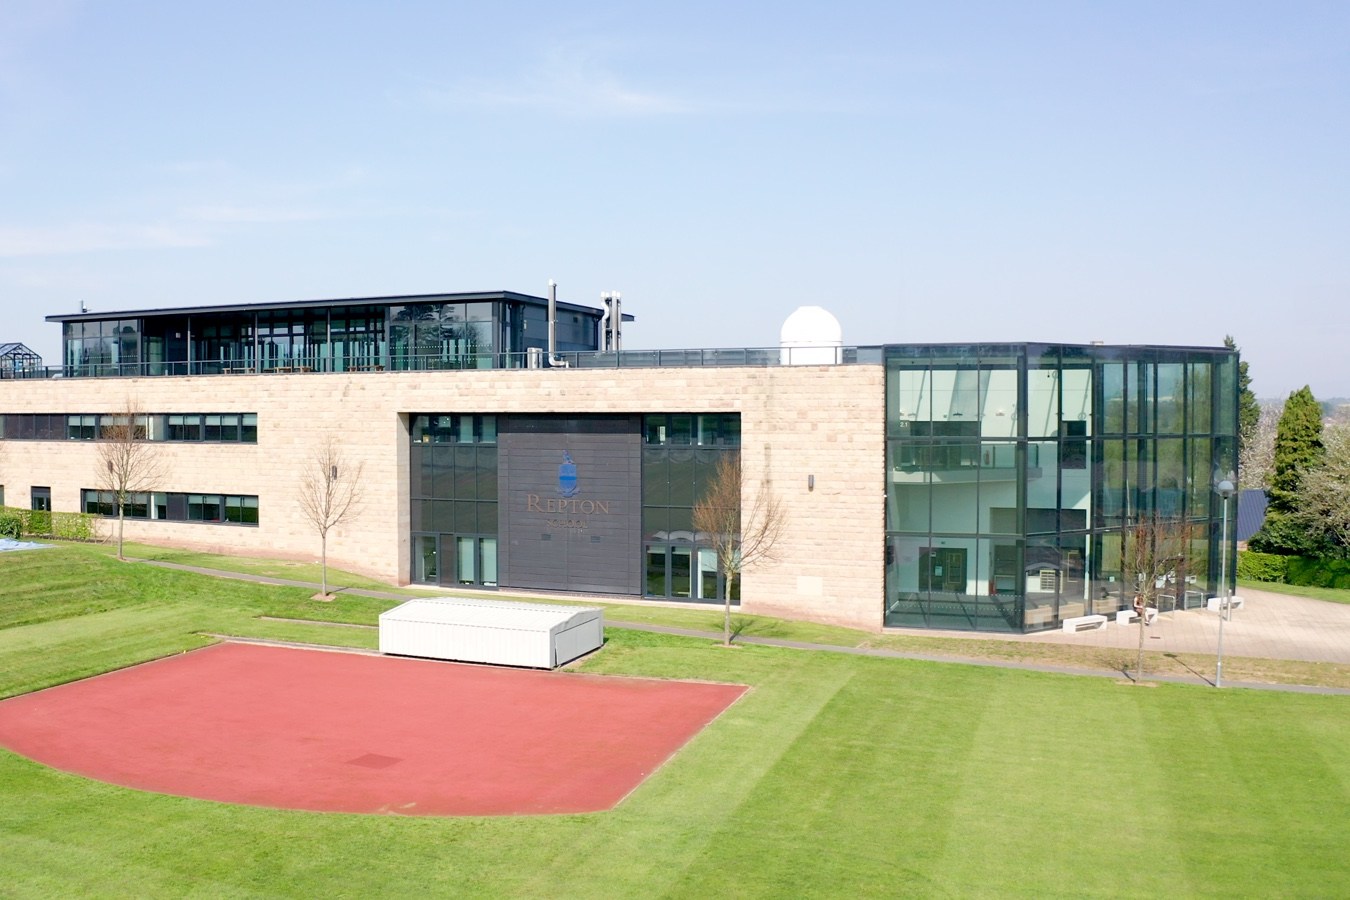 Repton Sports Centre